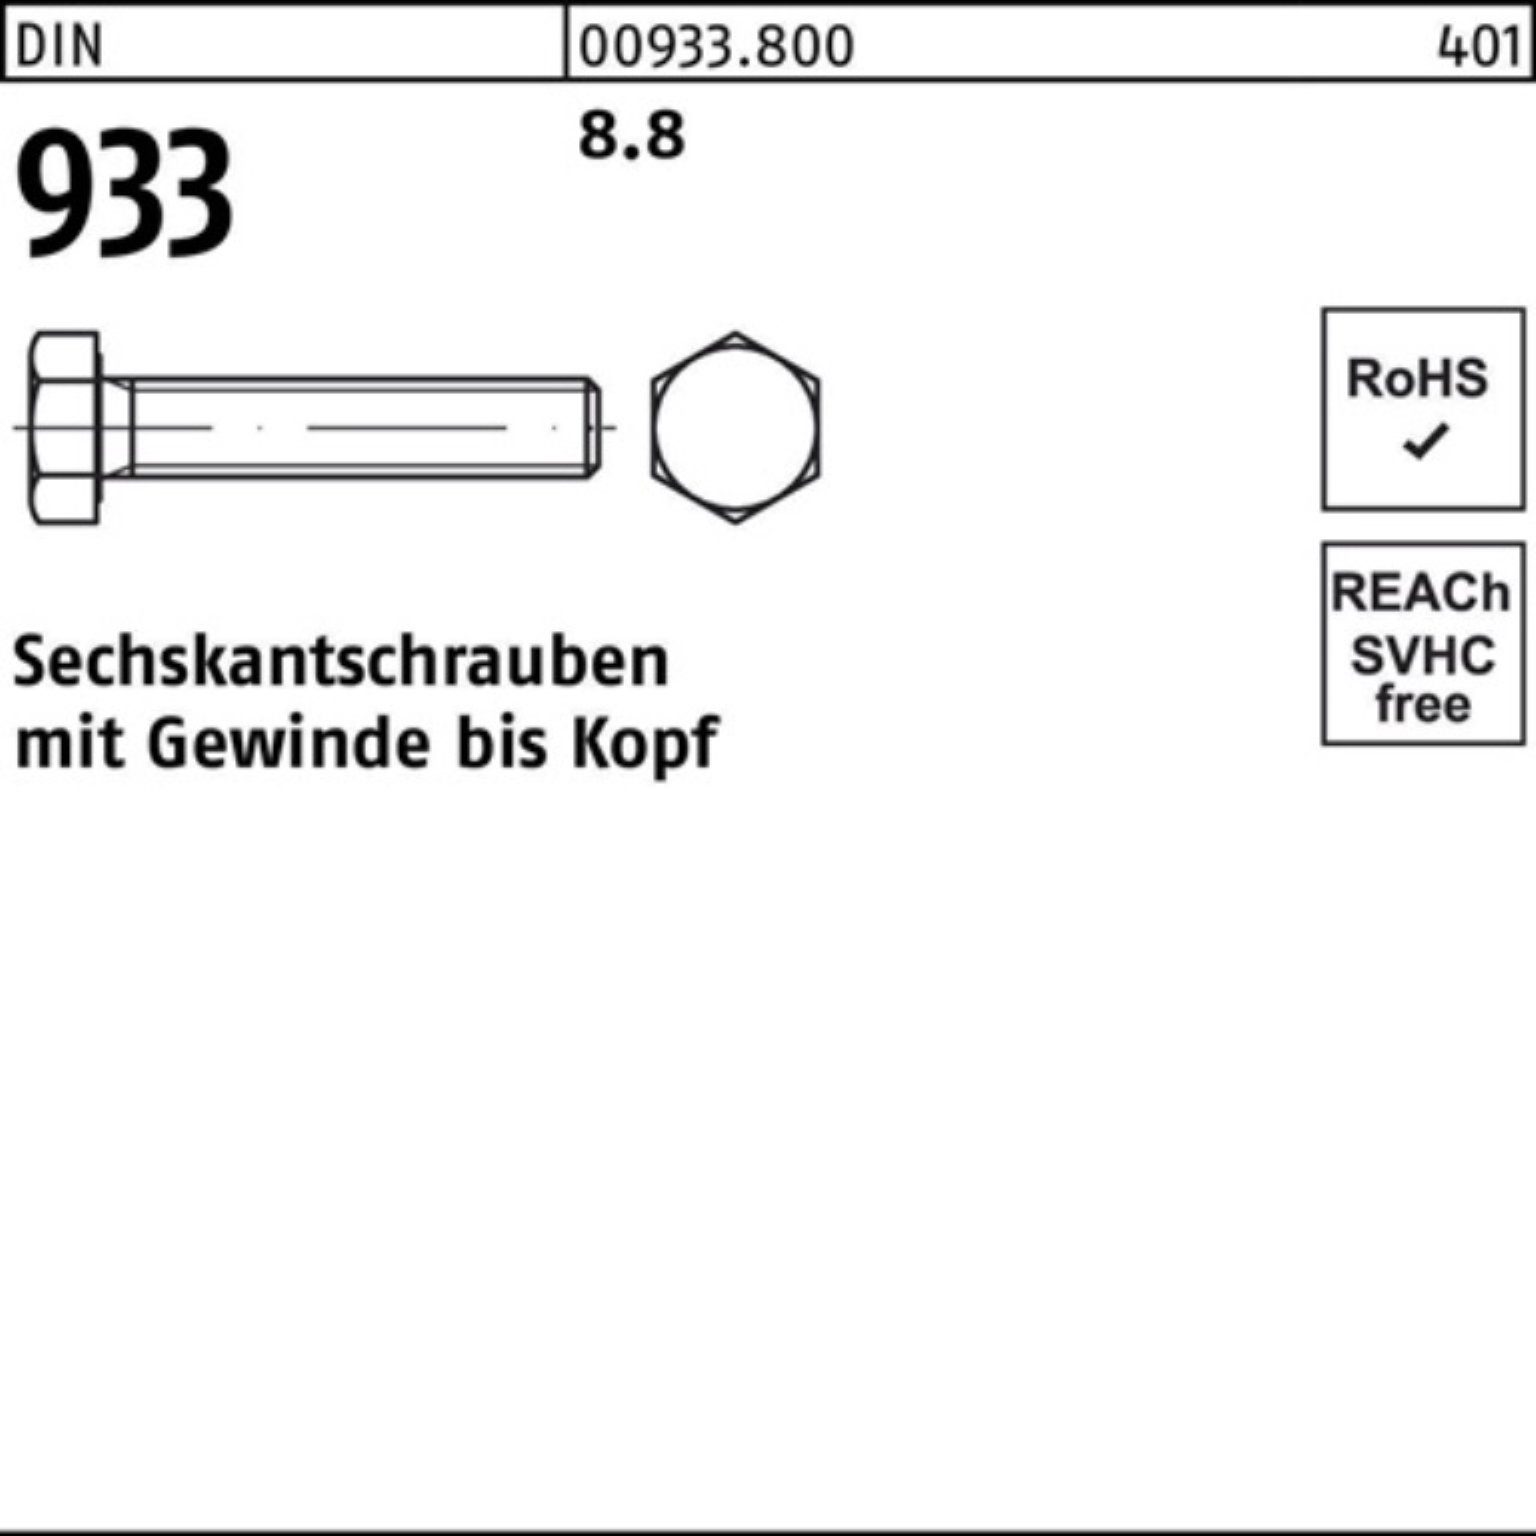 Reyher Sechskantschraube 100er Pack 933 8 VG 933 8.8 Stück 1 M48x DIN 60 Sechskantschraube DIN